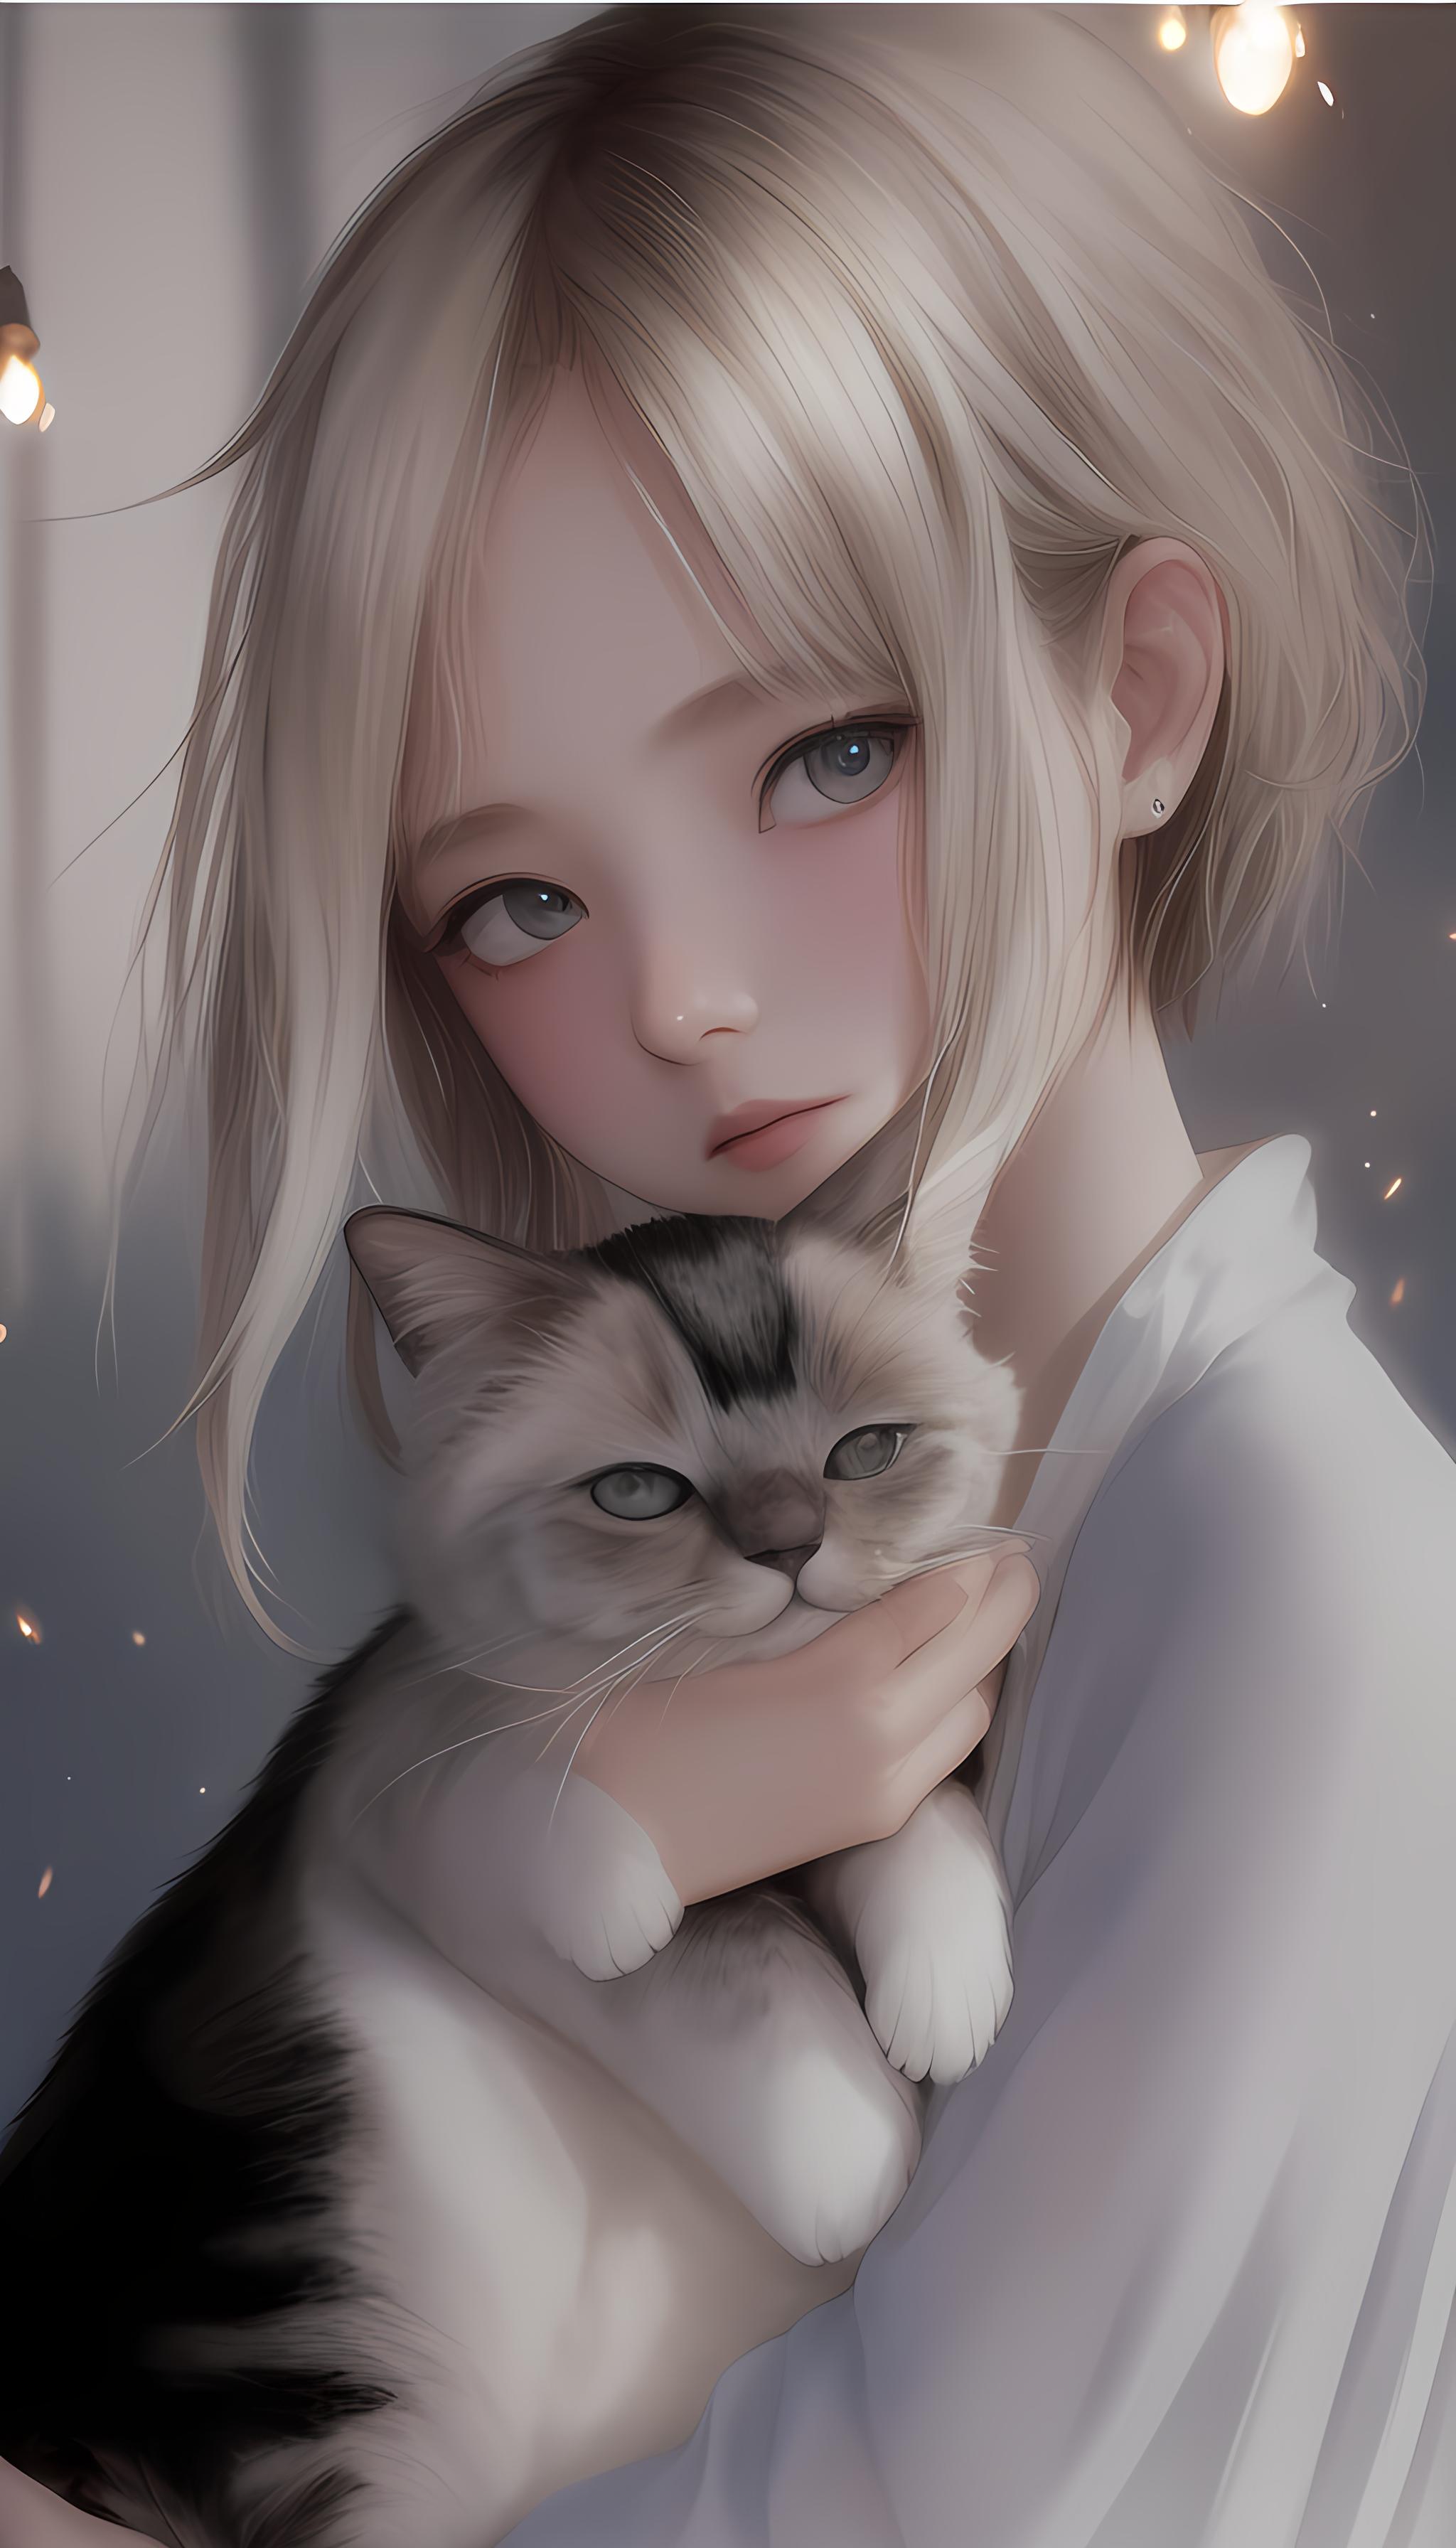 女孩与猫